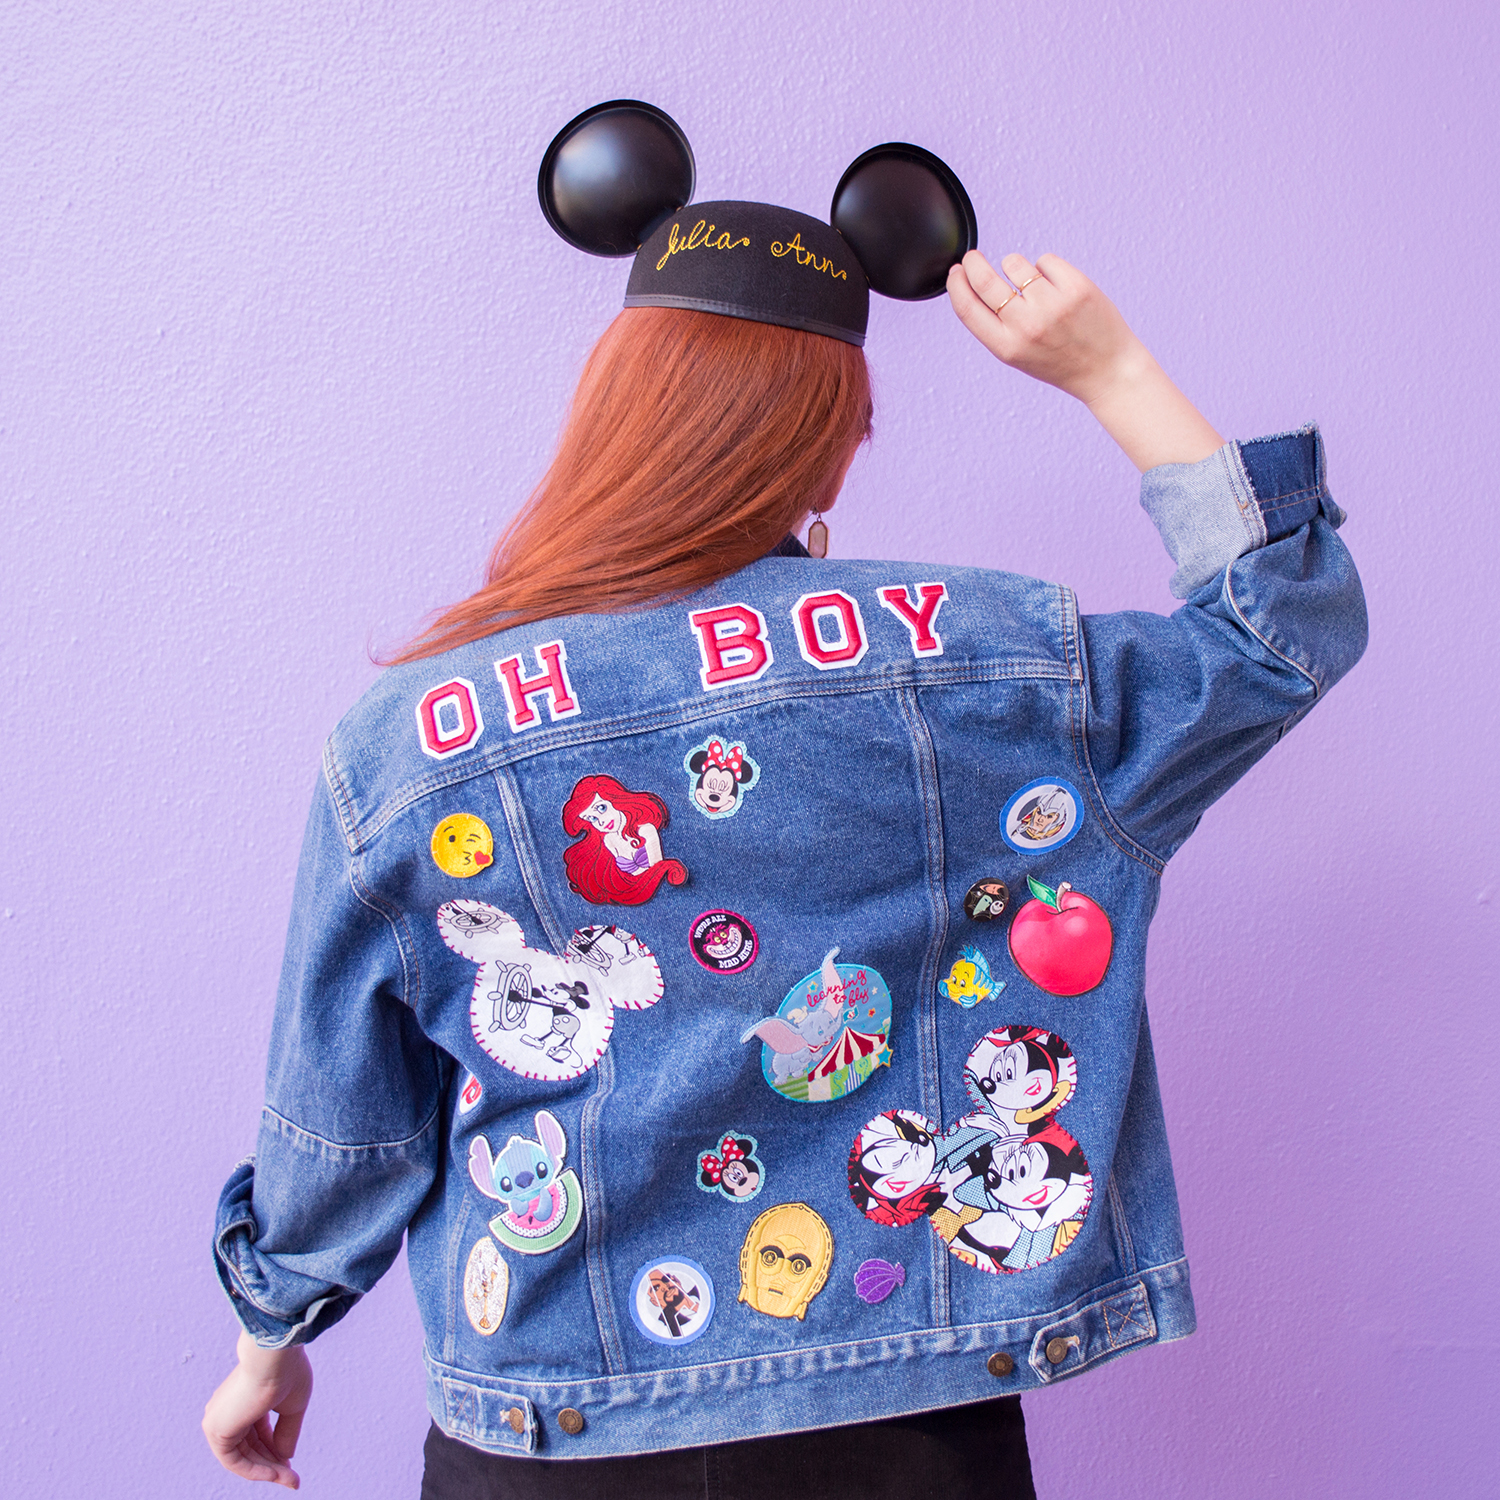 Fashion Denim Minnie Mouse Face Patch Online